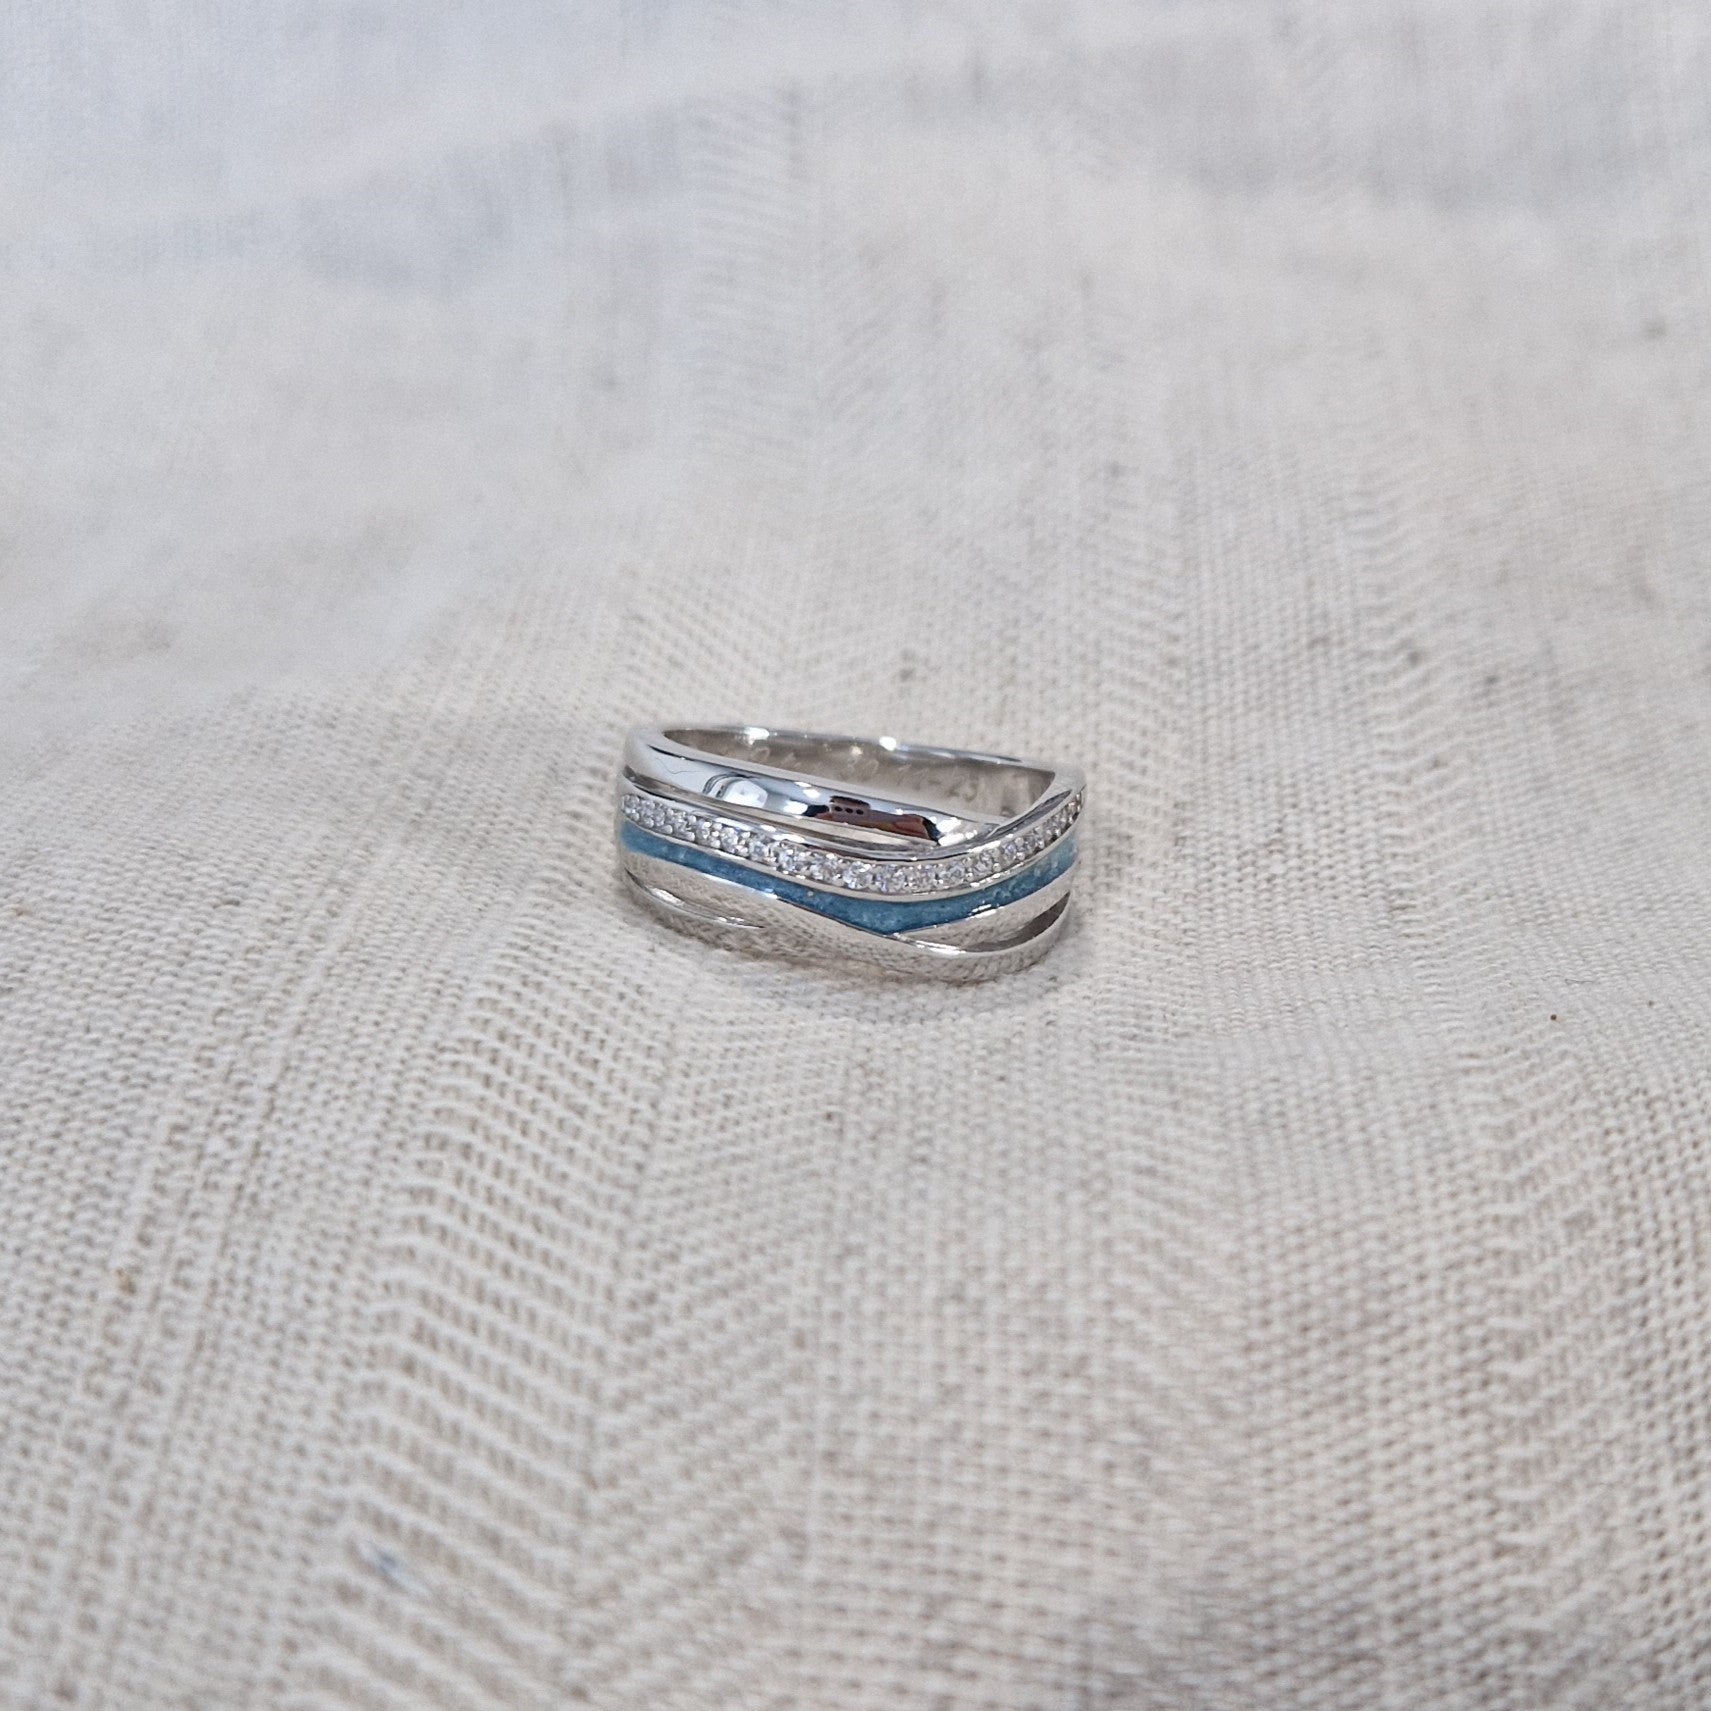 Gedenksieraad, creatieve ring 8 mm waar aan de bovenzijde zichtbaar as of haar verwerkt wordt in een deel van de ringband, een andere band is gezet met zirkonia's of diamanten naar keuze.  Alle